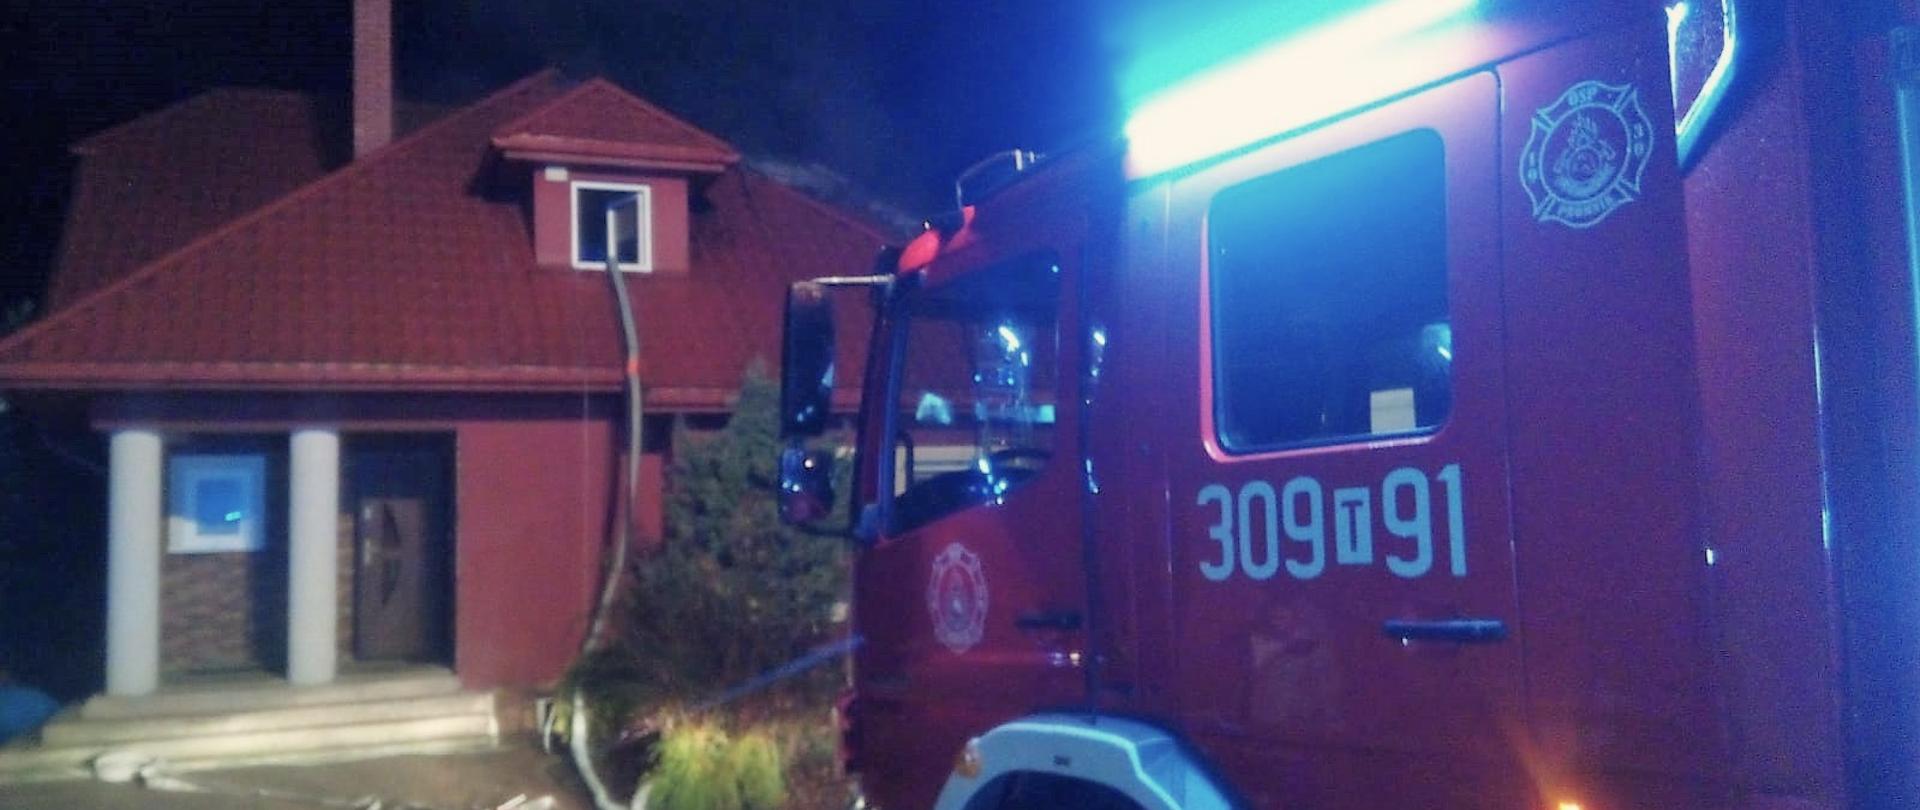 Zdjęcie przedstawia dom jednorodzinny w którym zapalił się dach. Z prawej strony stoi samochód gaśniczy. Wąż pożarniczy leży na chodniku i pociągnięty jest aż do okna w facjacie budynku.